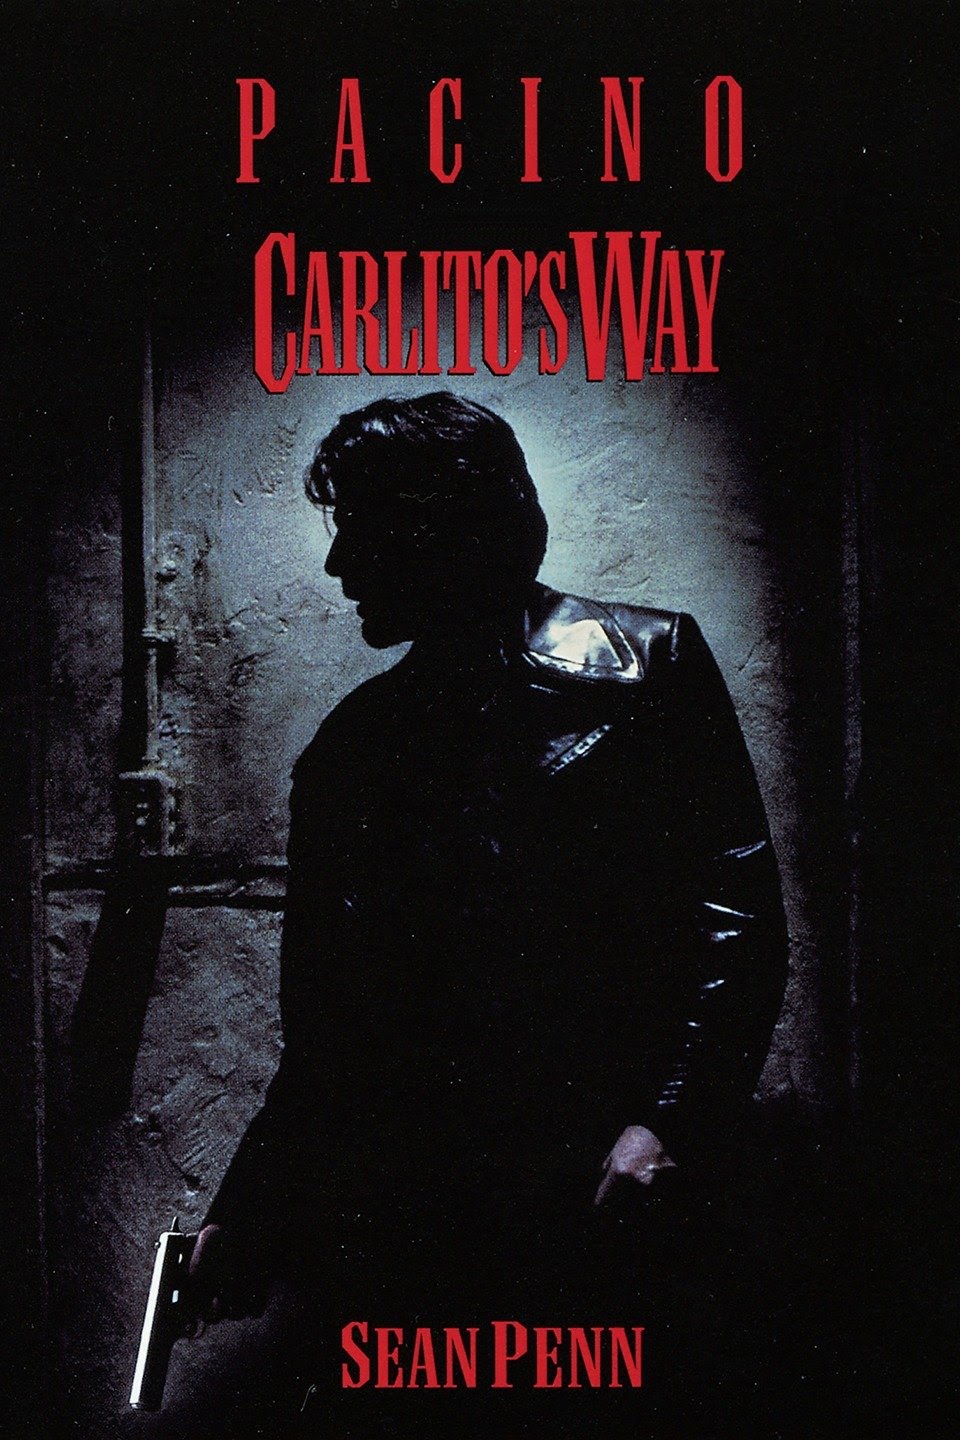 Carlito’s Way [HD] (1993)